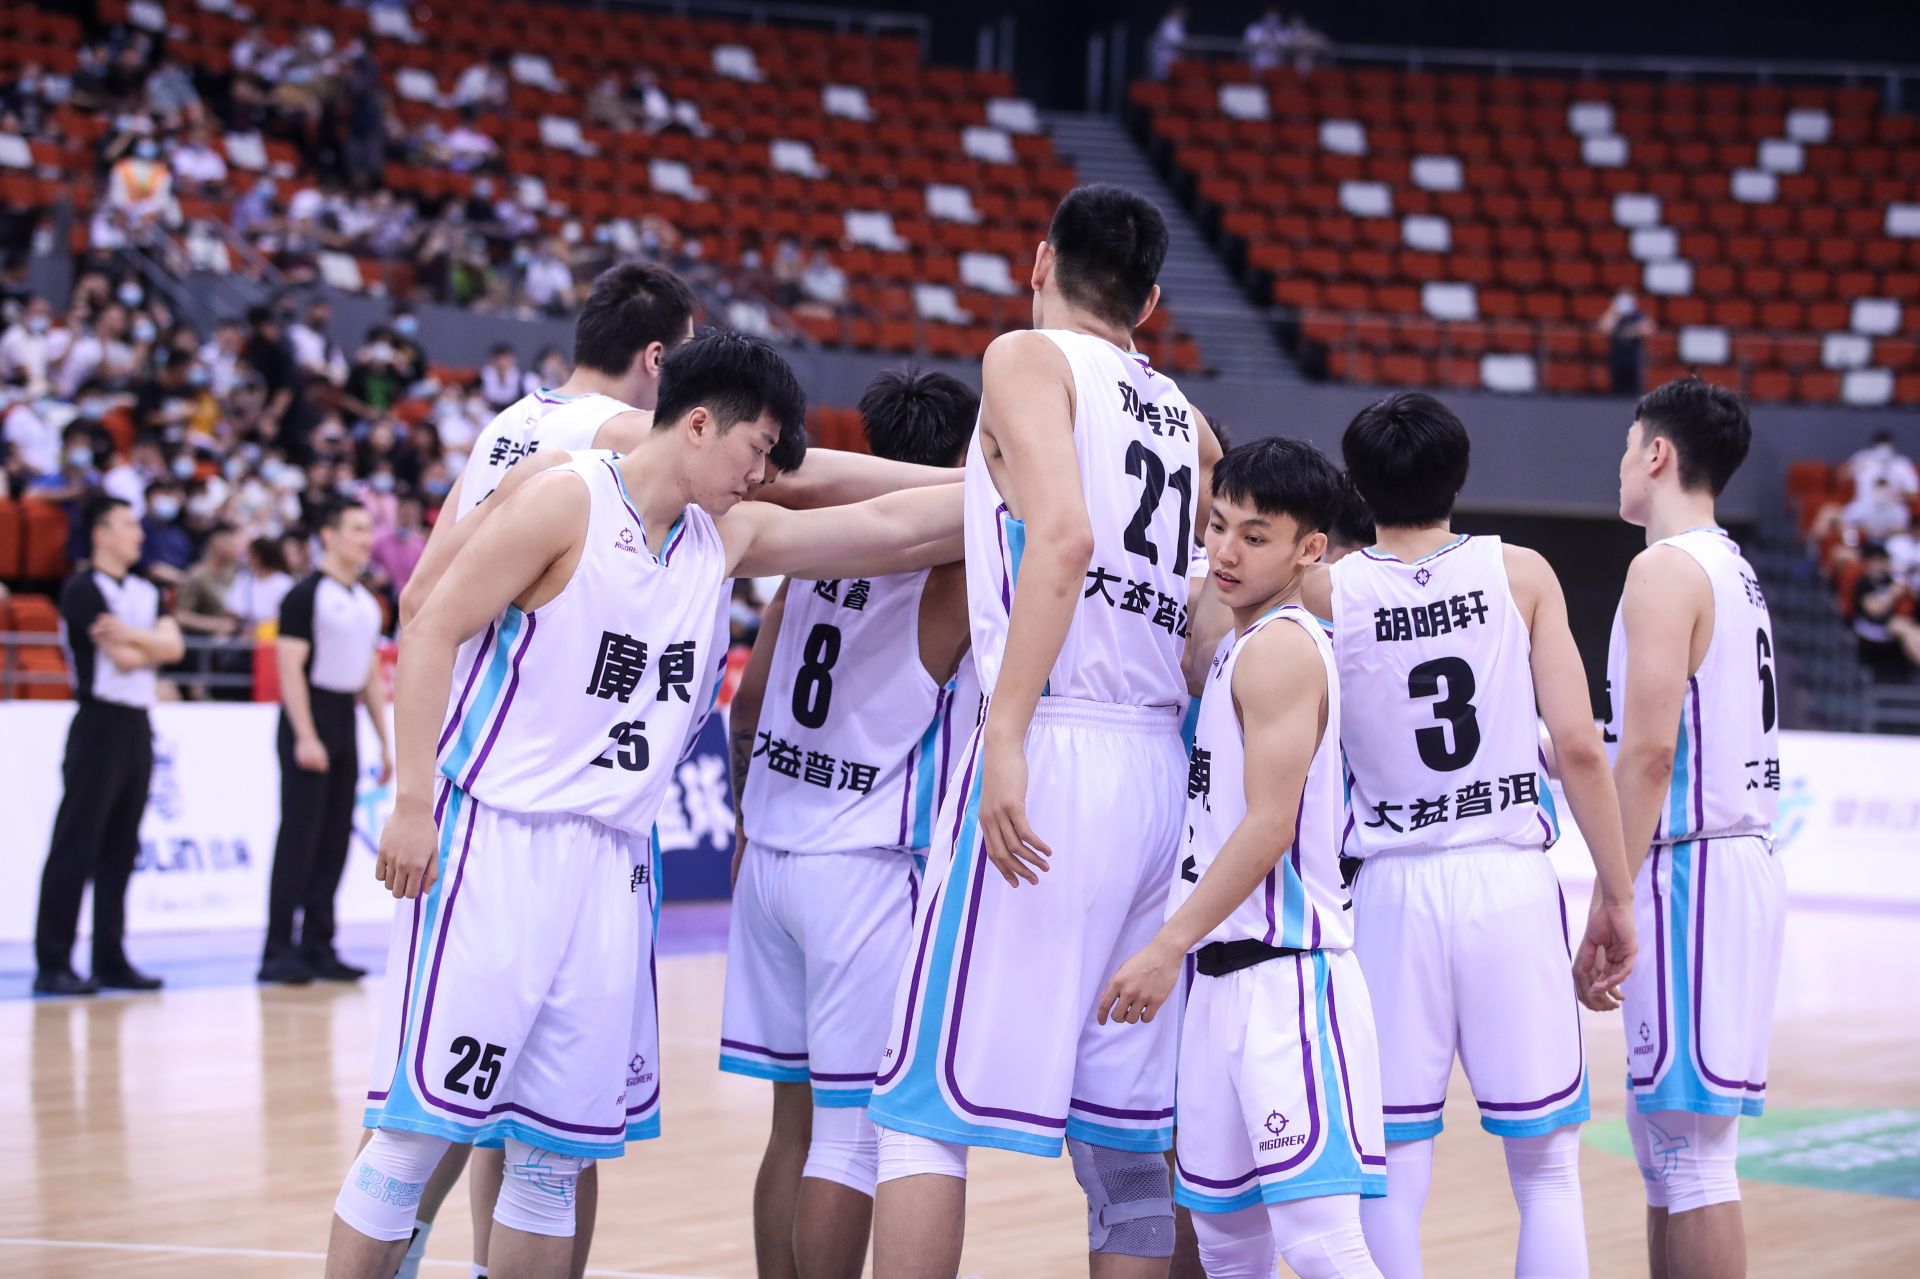 全运会男篮u22组别决赛阶段,南粤篮球的全运会参赛名额继续增加